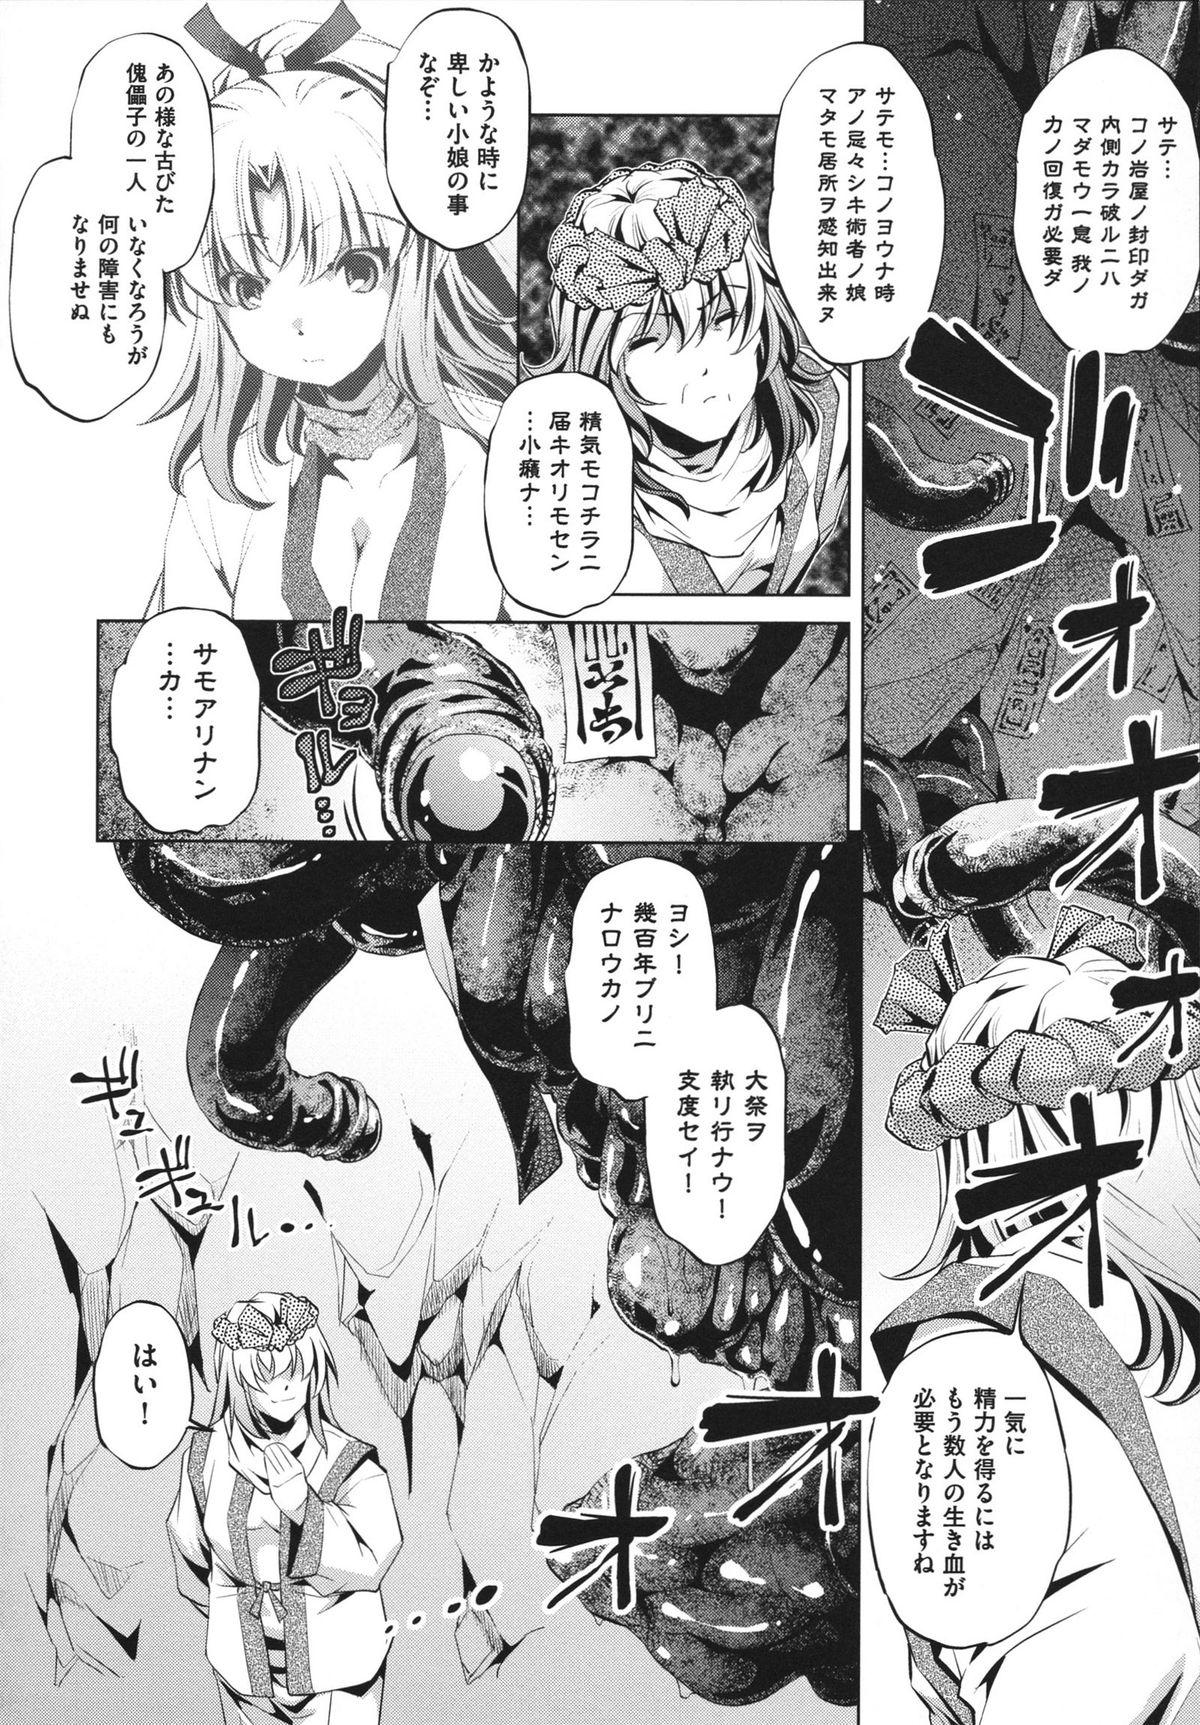 [Ootori Ryuuji] Shokushu wa Yawarakana Chibusa ni Makitsuki Onna-tachi no Ana wo Kakimidasu - Feeler coils around a soft breast and violates women's hole. 141